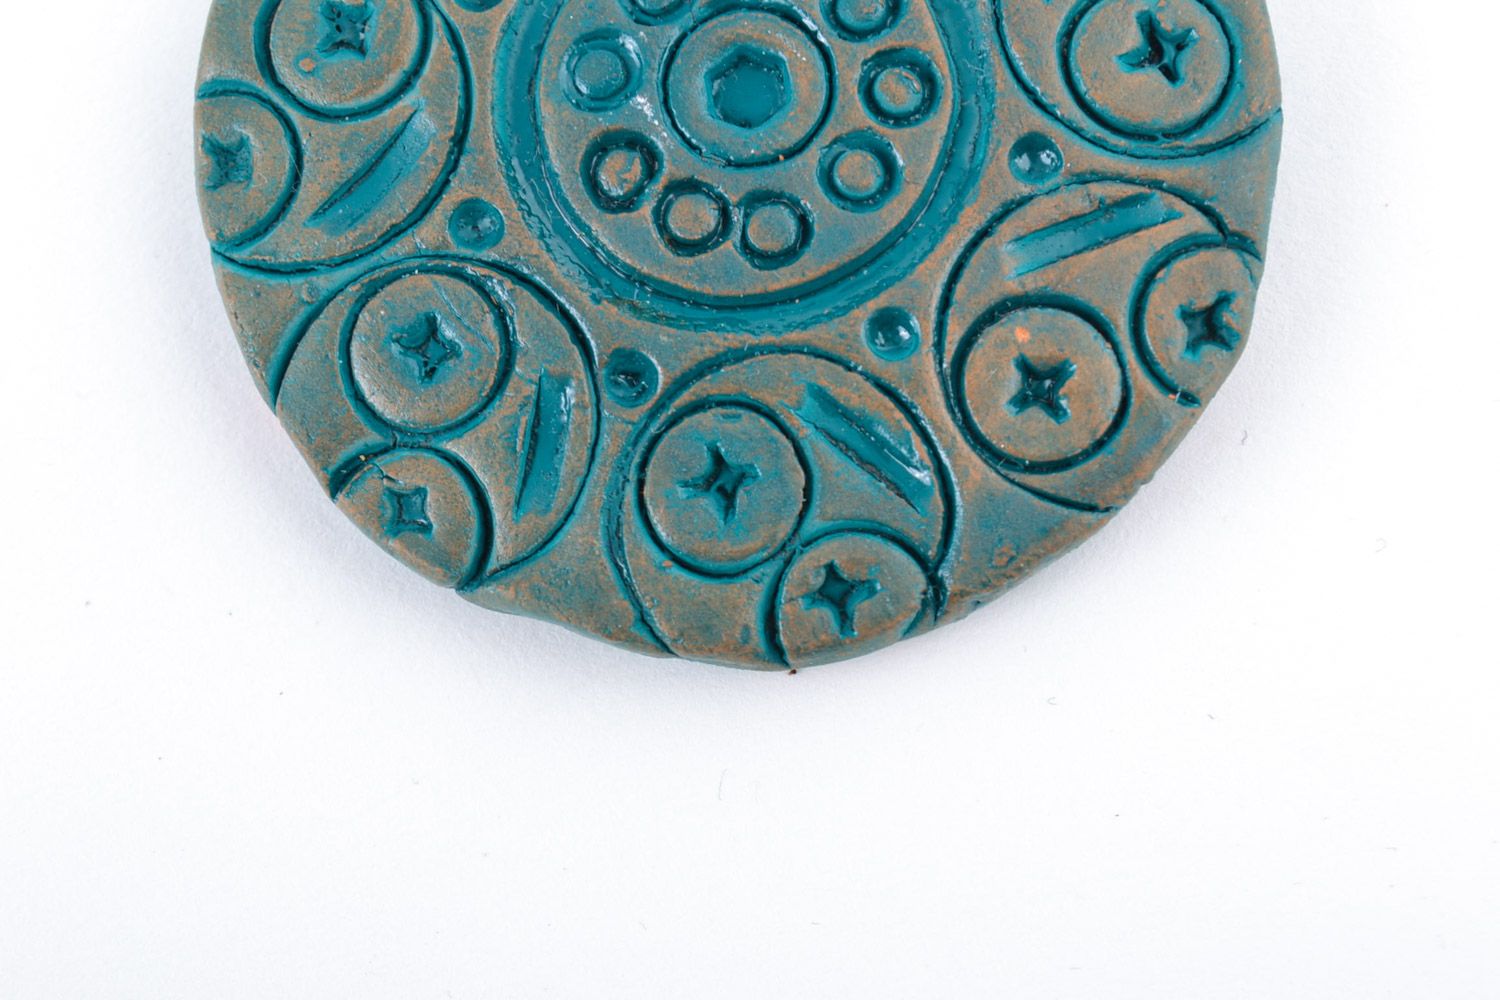 Круглый глиняный кулон большой с узорами расписанный акрилом ручной работы фото 4